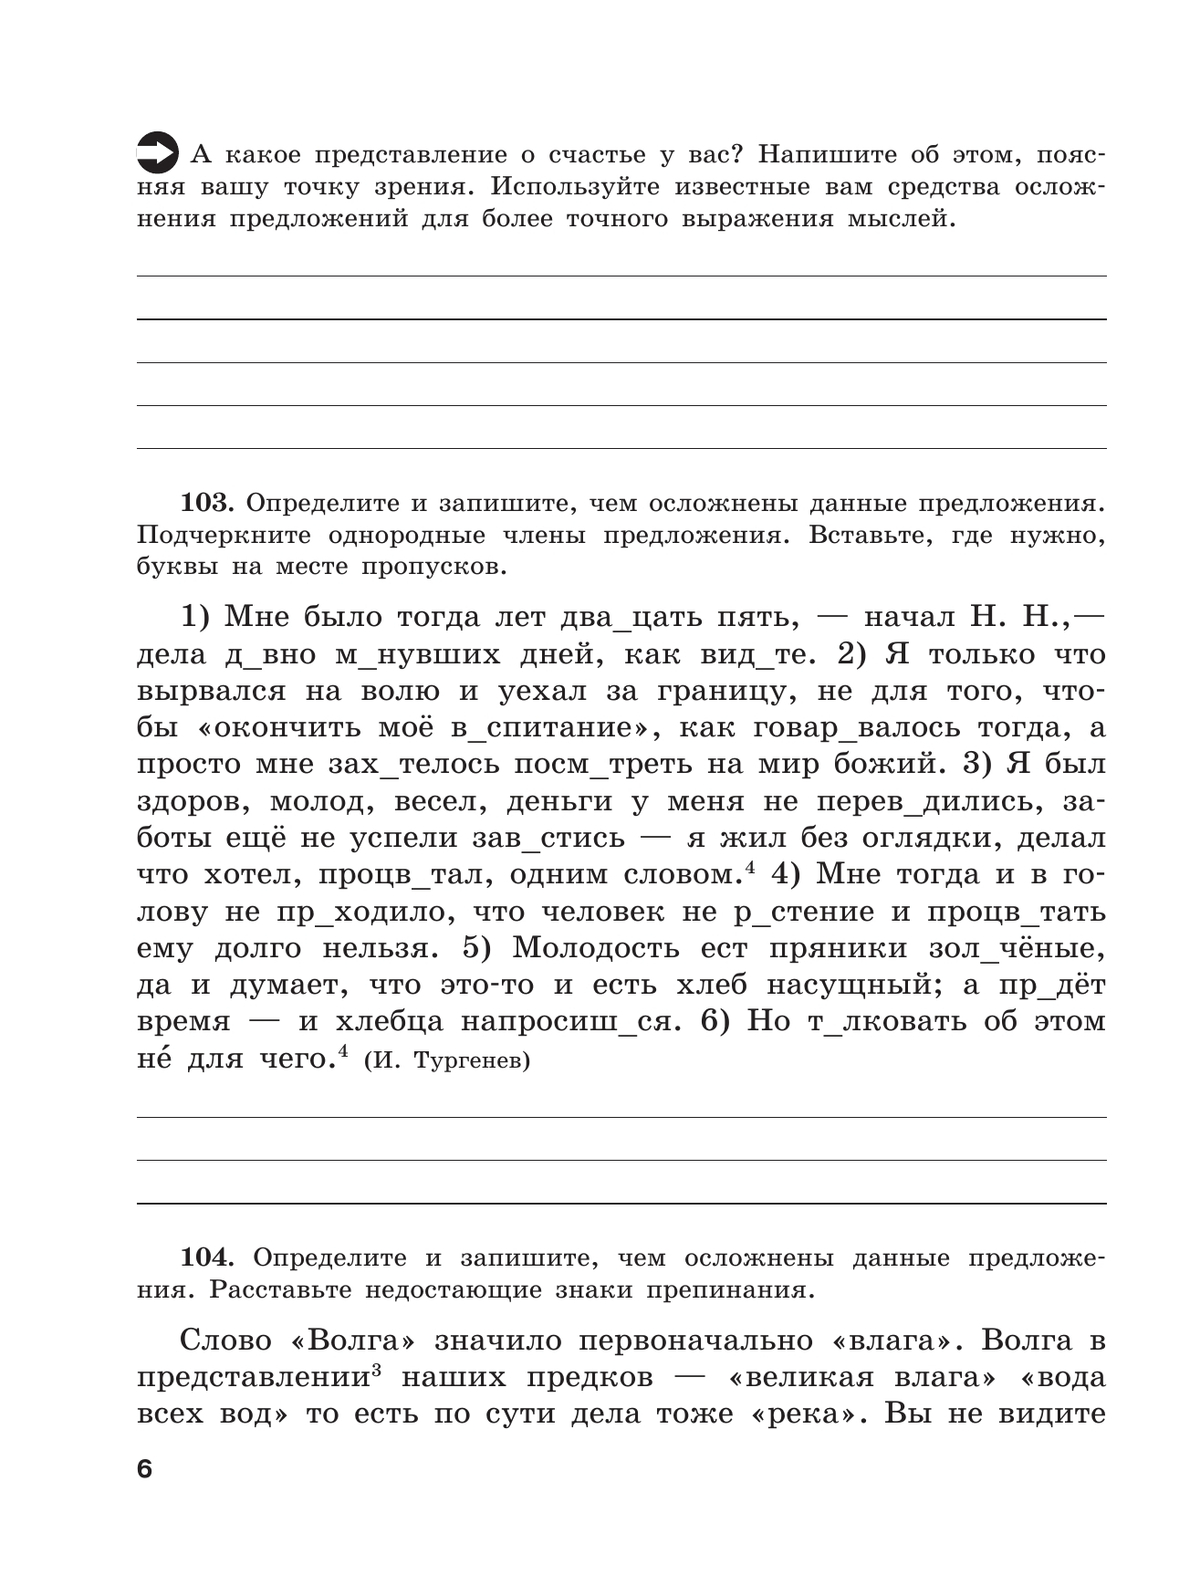 Скорая помощь по русскому языку. Рабочая тетрадь. 8 класс. В 2 ч. Часть 2 3